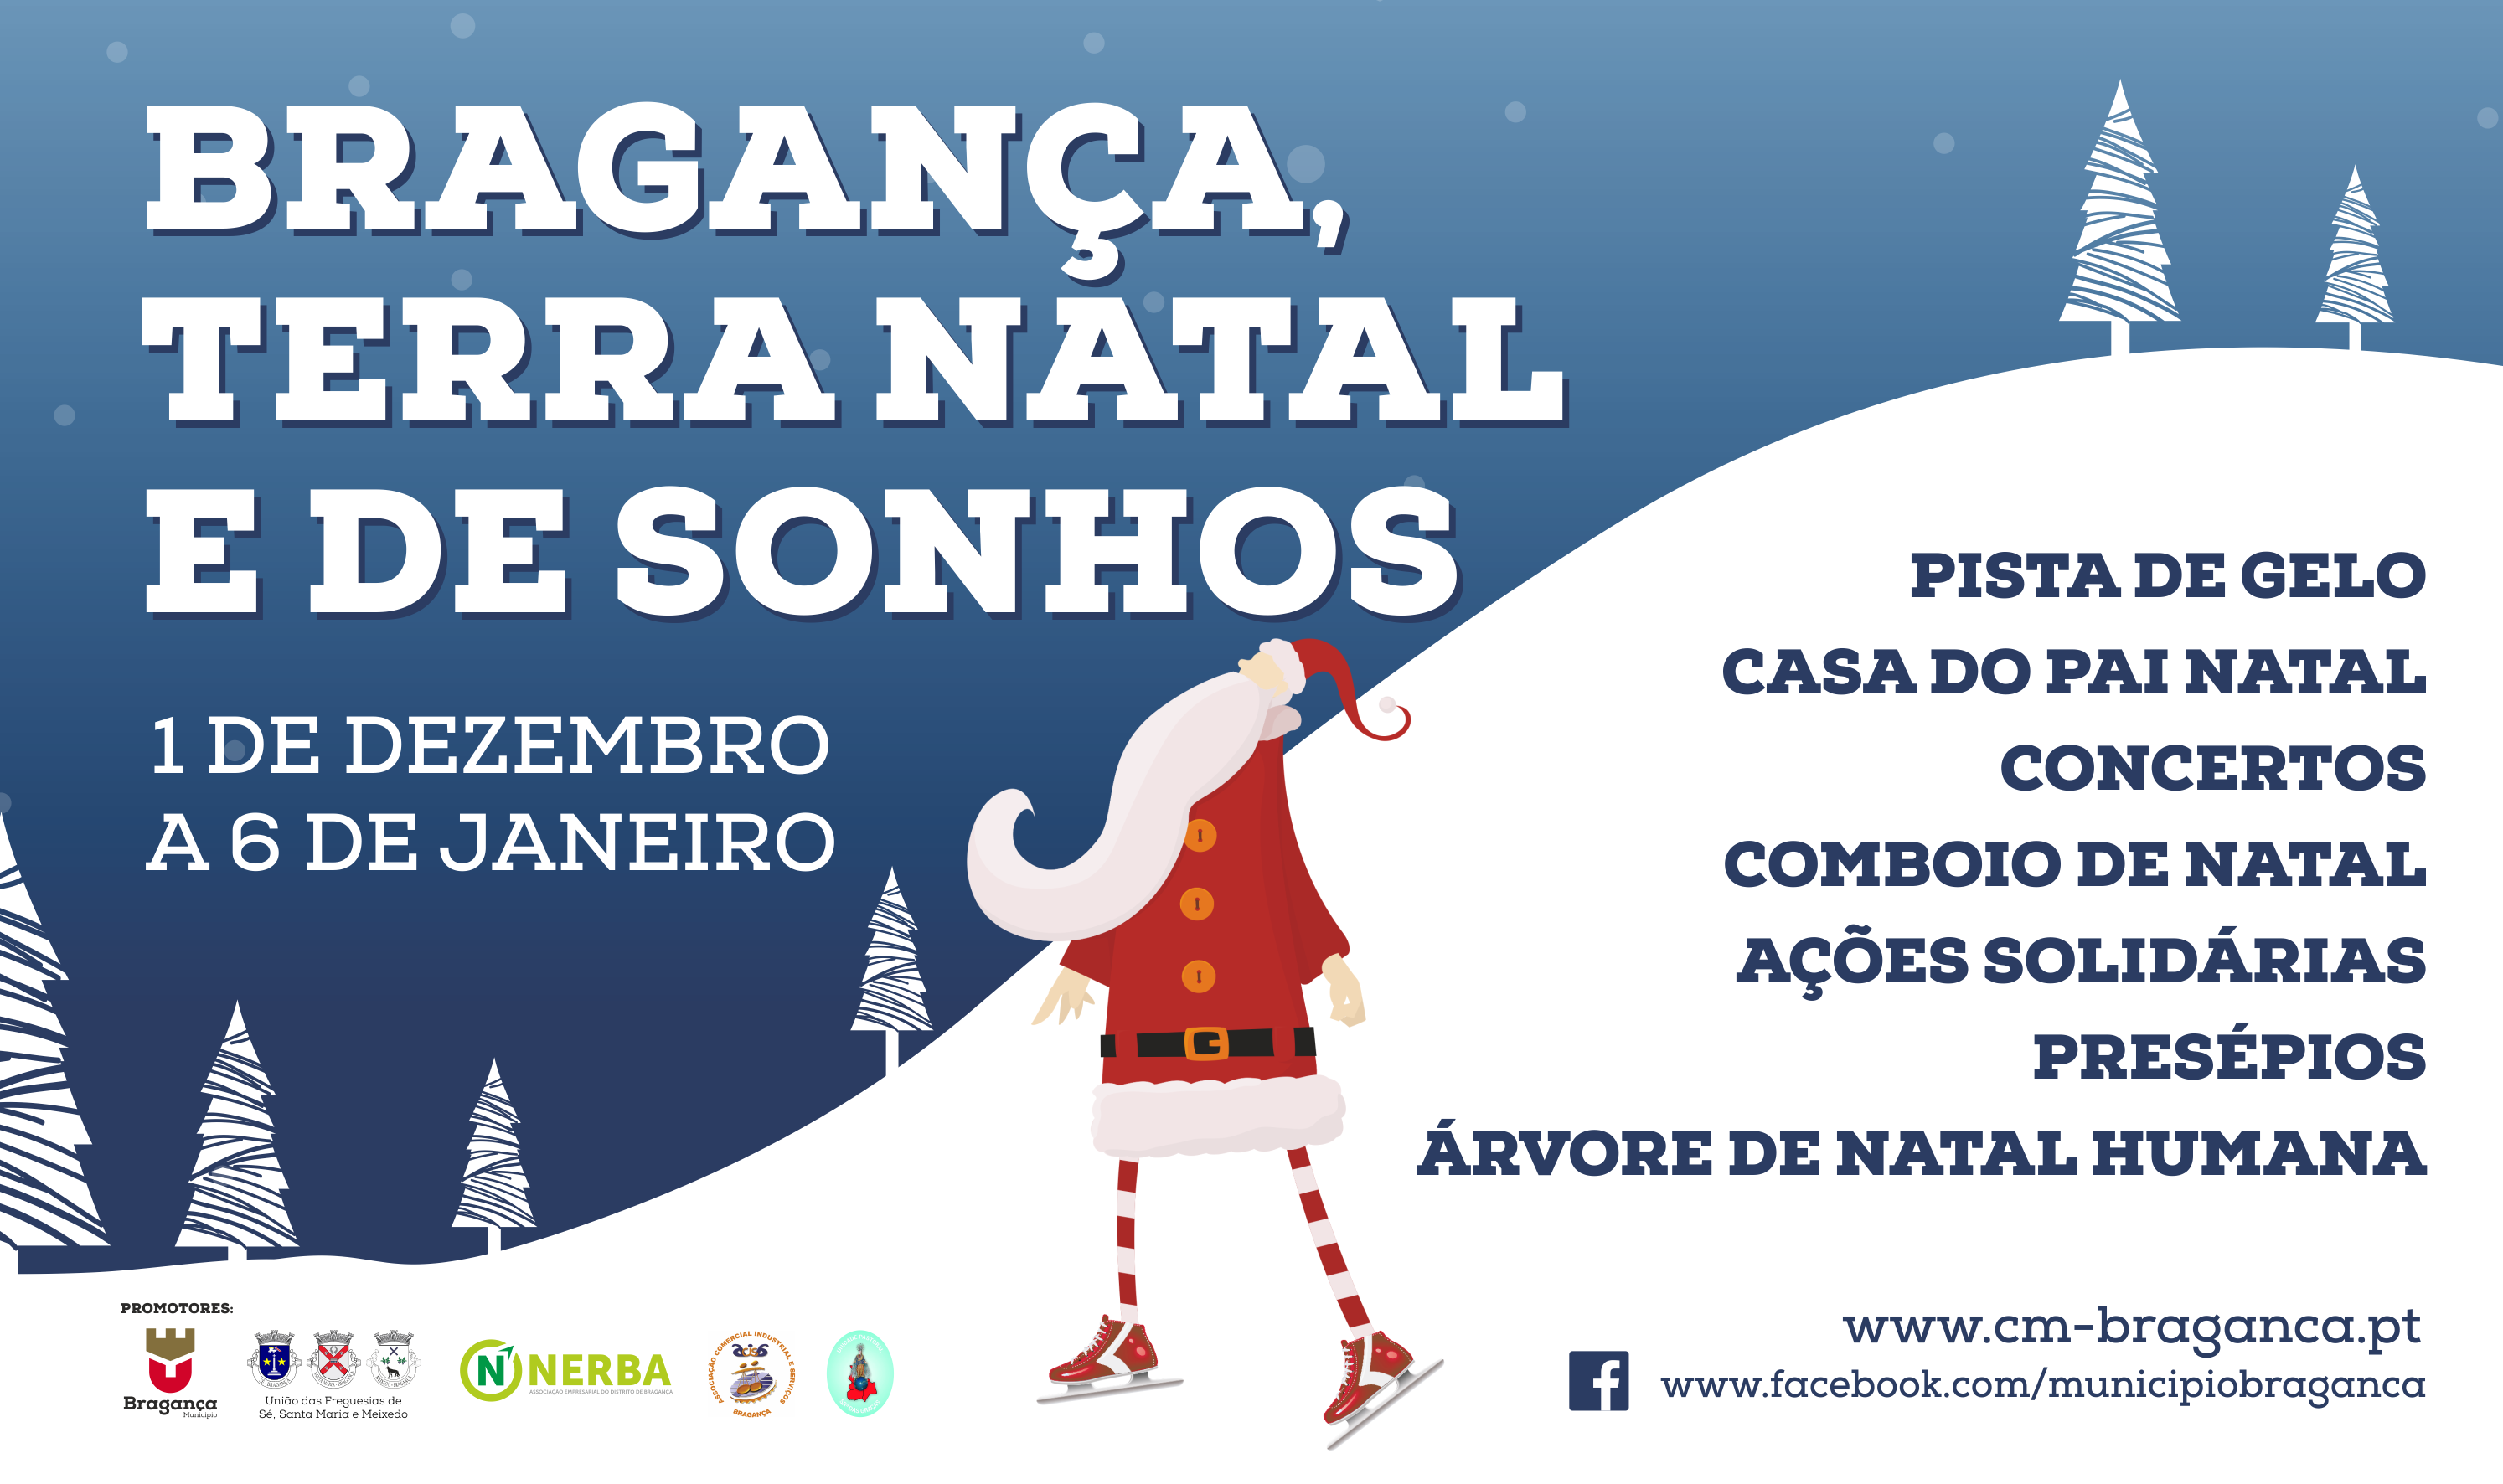 Em época festiva, “Bragança, Terra Natal e de Sonhos”